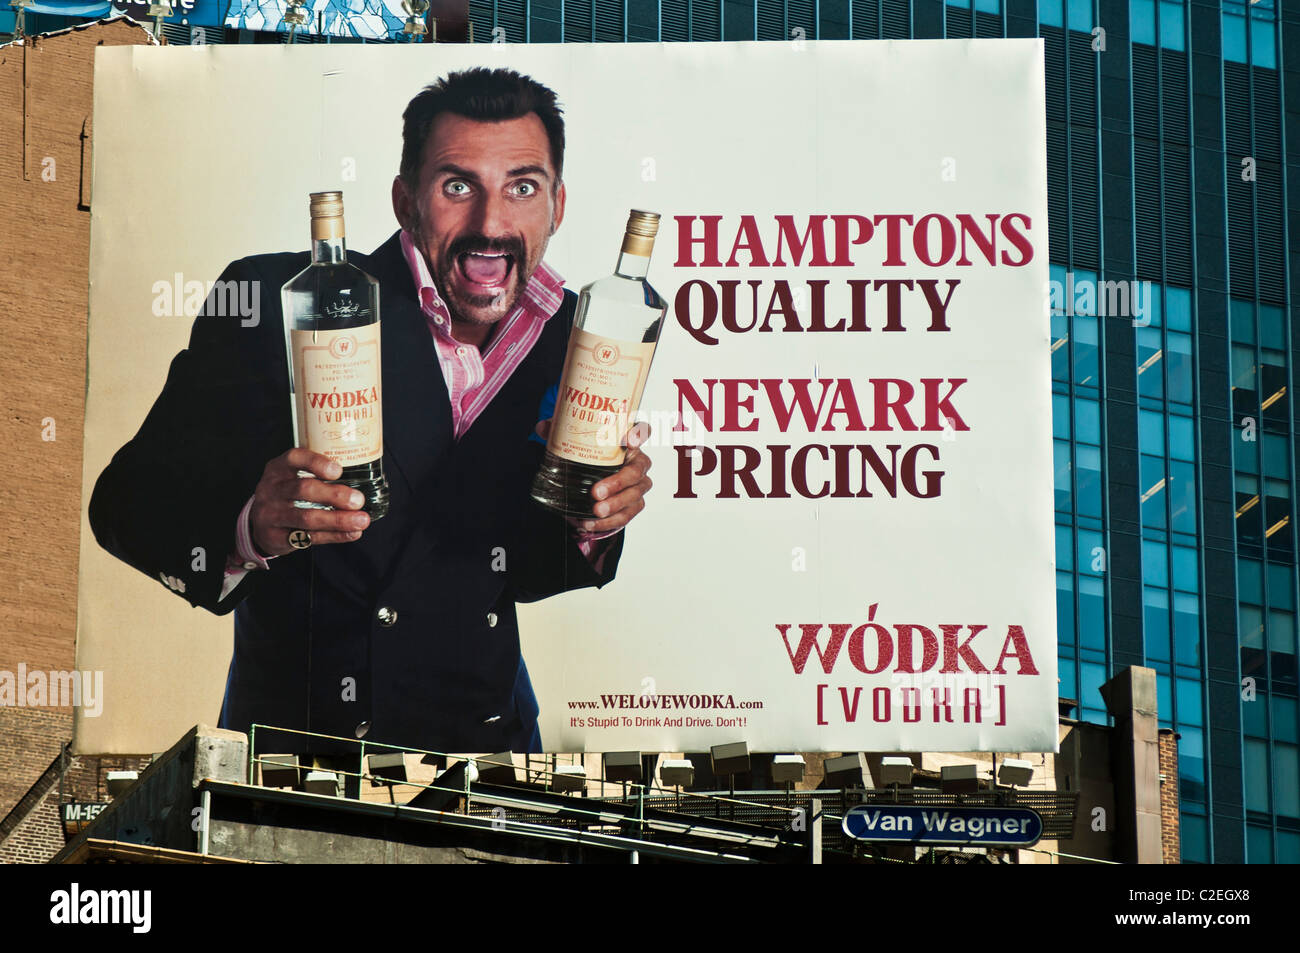 Polmos Bialystok Vodka polonaise annonce, Hamptons, qualité prix de Newark, Manhattan, New York City, USA Banque D'Images